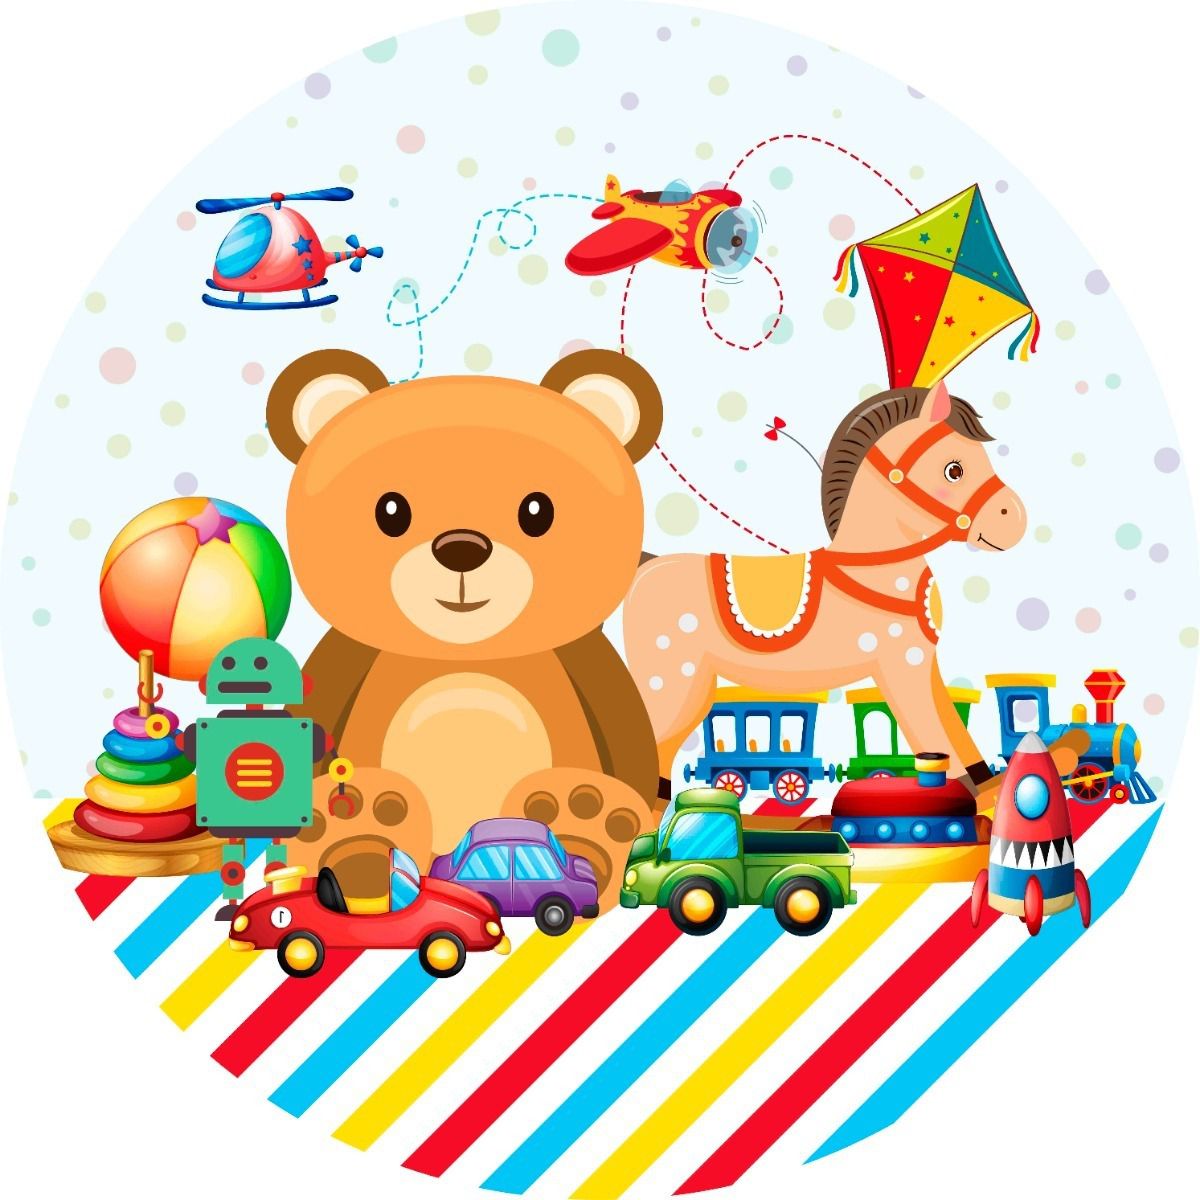 TEDY MOTOS - Dia das crianças é aqui na Tedy Motos!! Mini